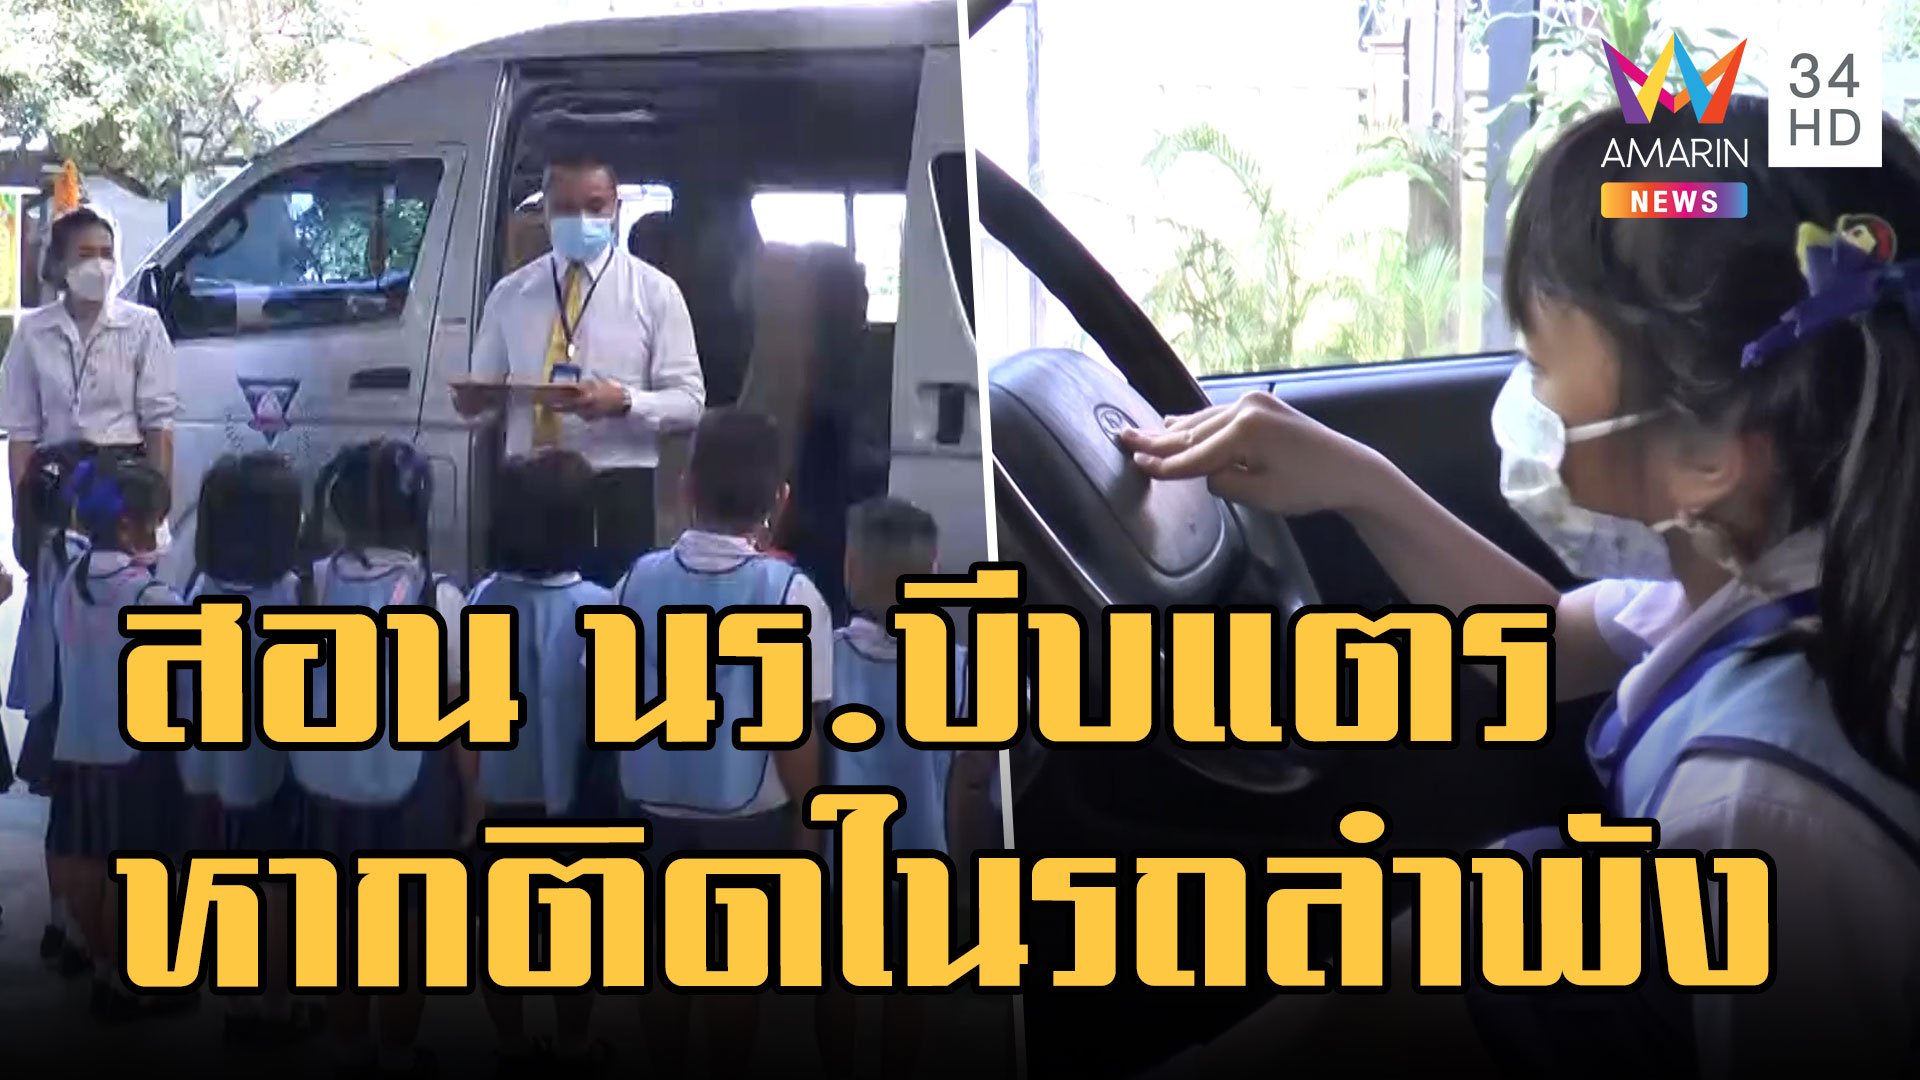 โรงเรียนสอนนักเรียนซ้อมแผนเมื่อติดอยู่ในรถยนต์ ครูให้ทดลองบีบแตร | ข่าวอรุณอมรินทร์ | 1 ก.ย. 65 | AMARIN TVHD34